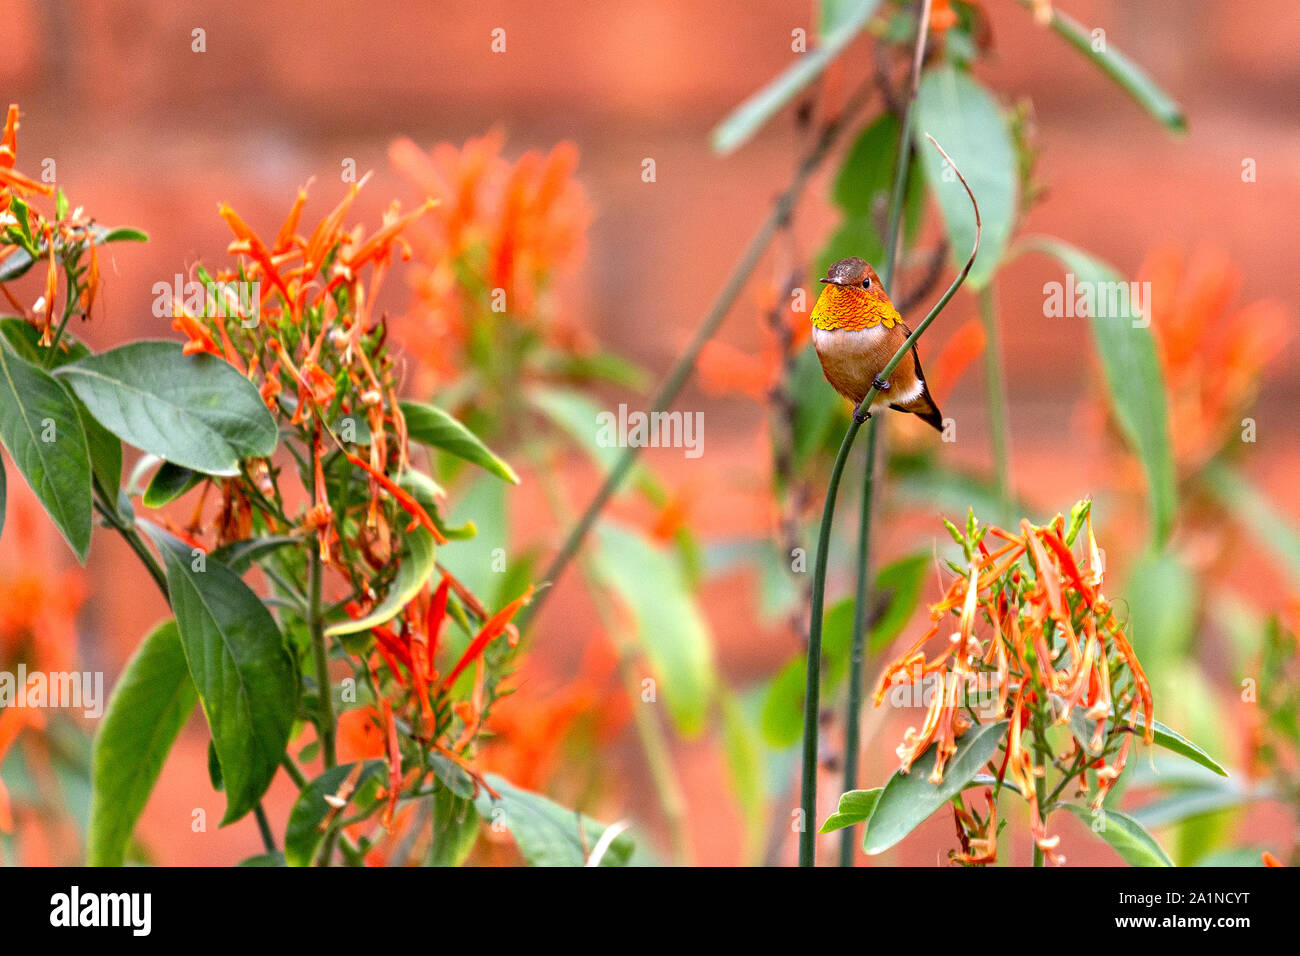 Ein erwachsenes Männchen Allens Kolibri mit einem hellen, irisierend orange-rote gorget sitzt auf einem grünen Zweig von farbenfrohen orange Blumen umgeben Stockfoto